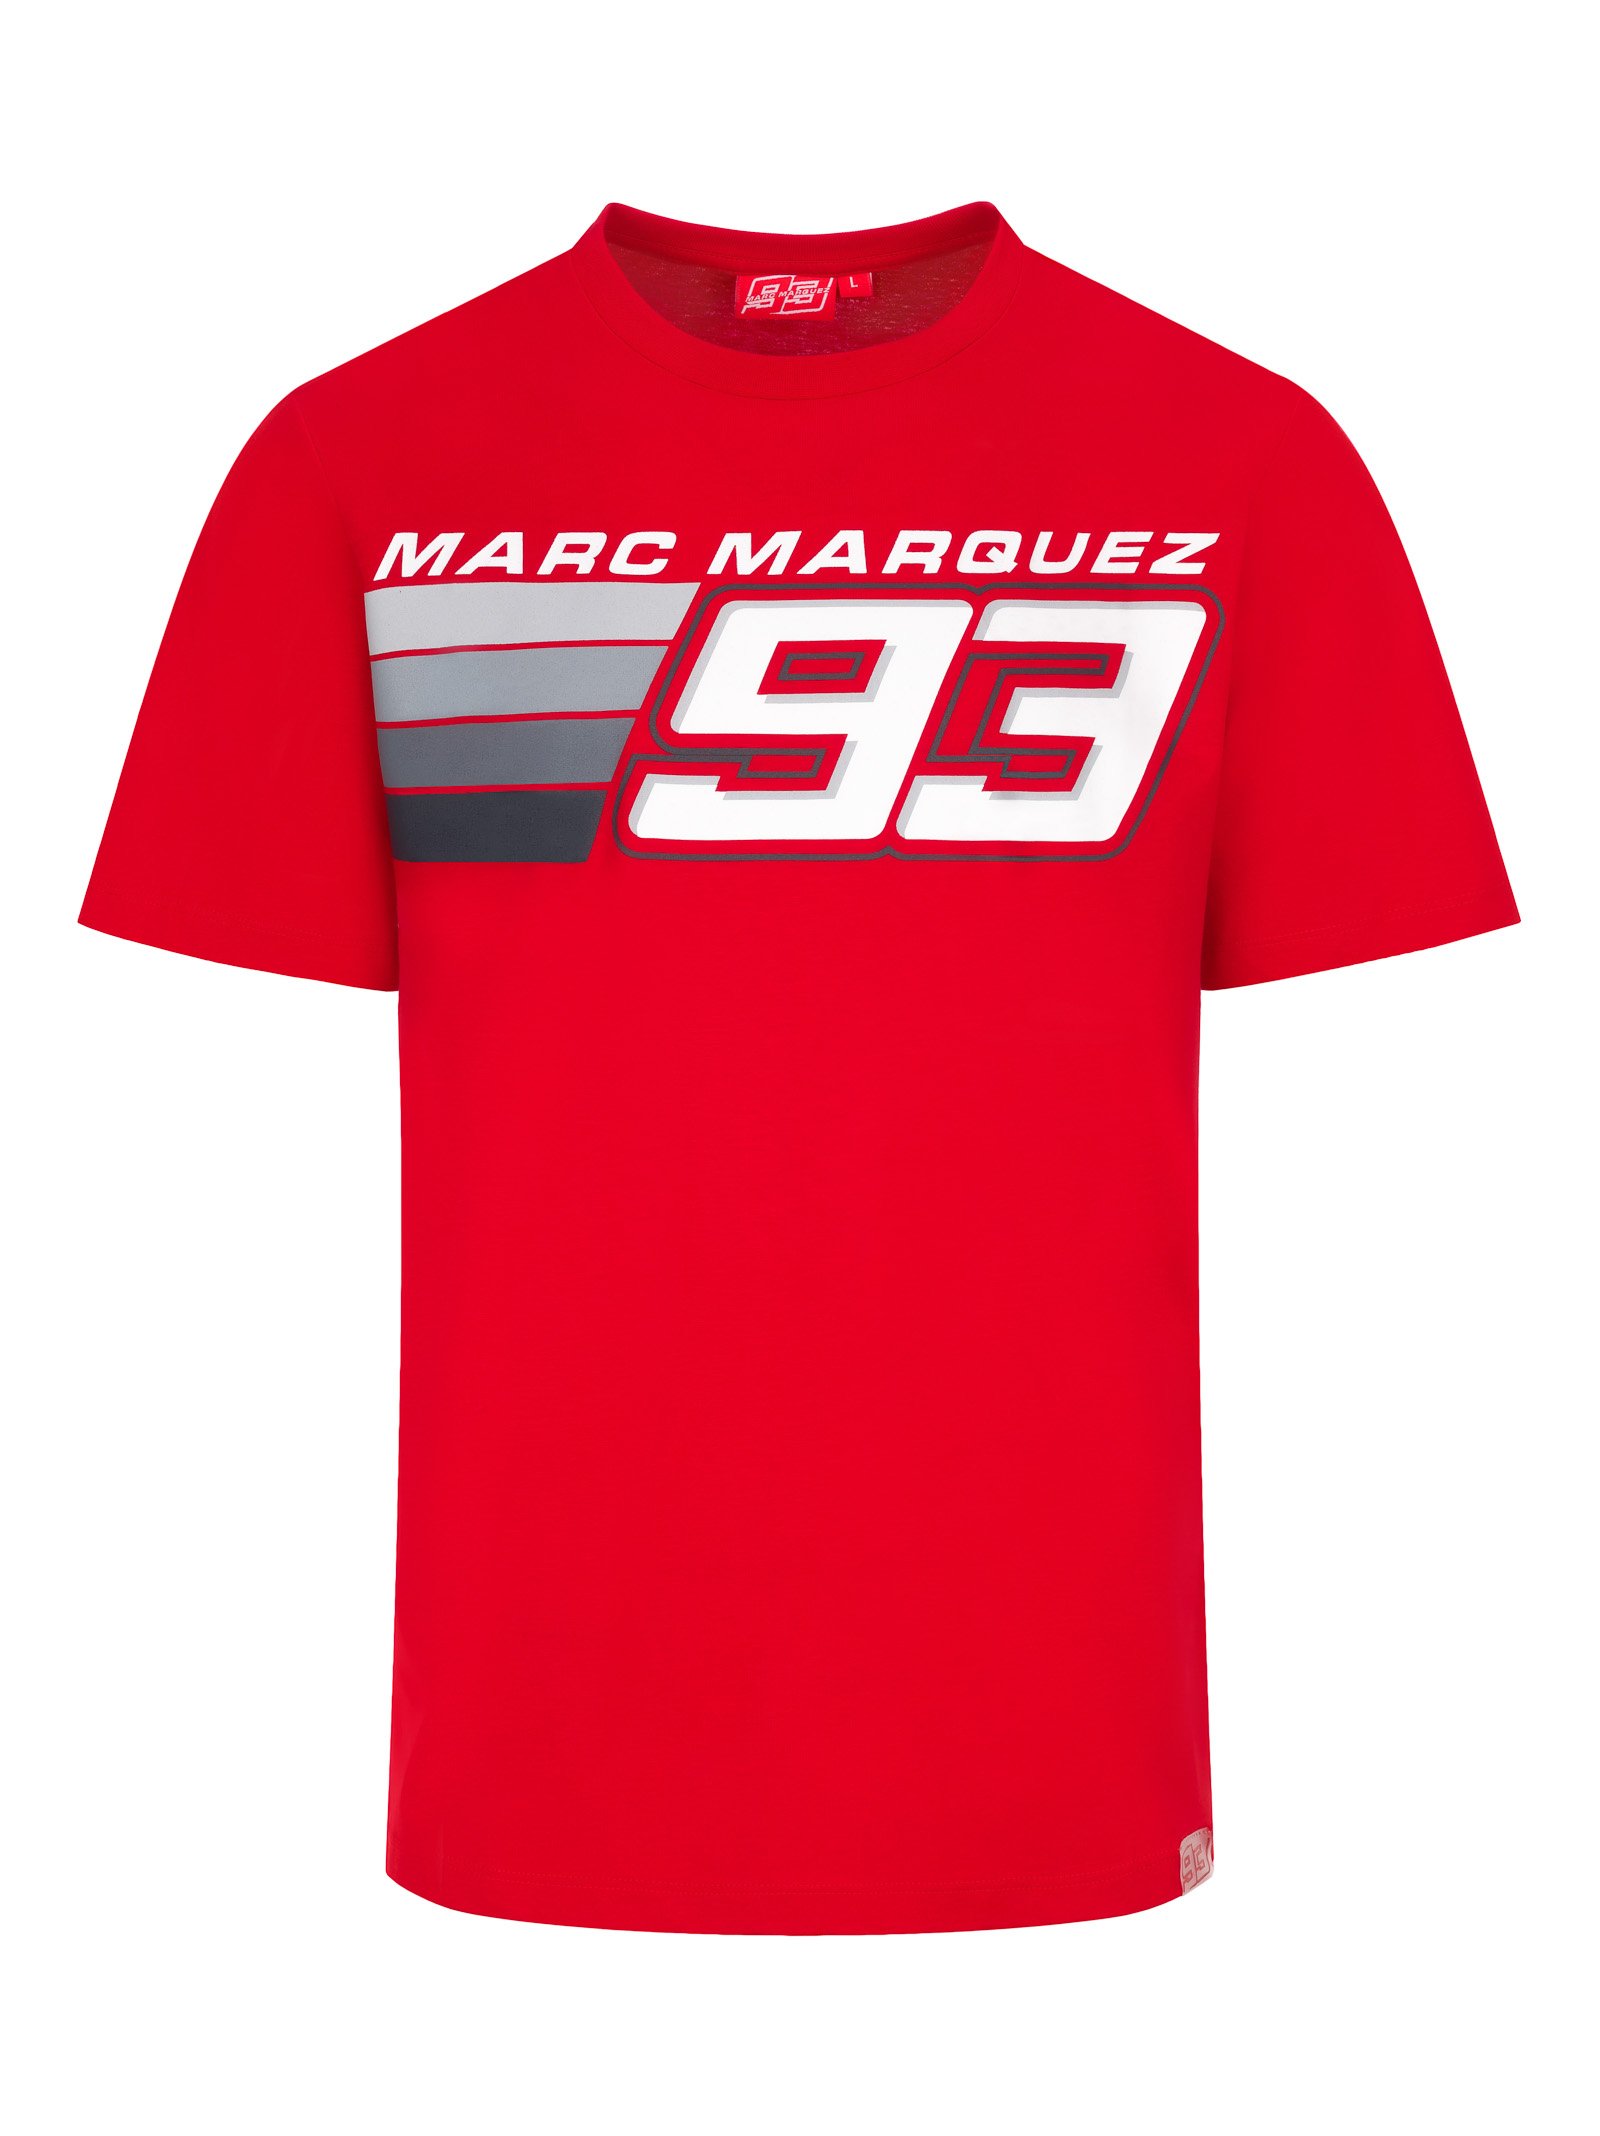 T-shirt homme MARC MARQUEZ 93 rouge vue devant